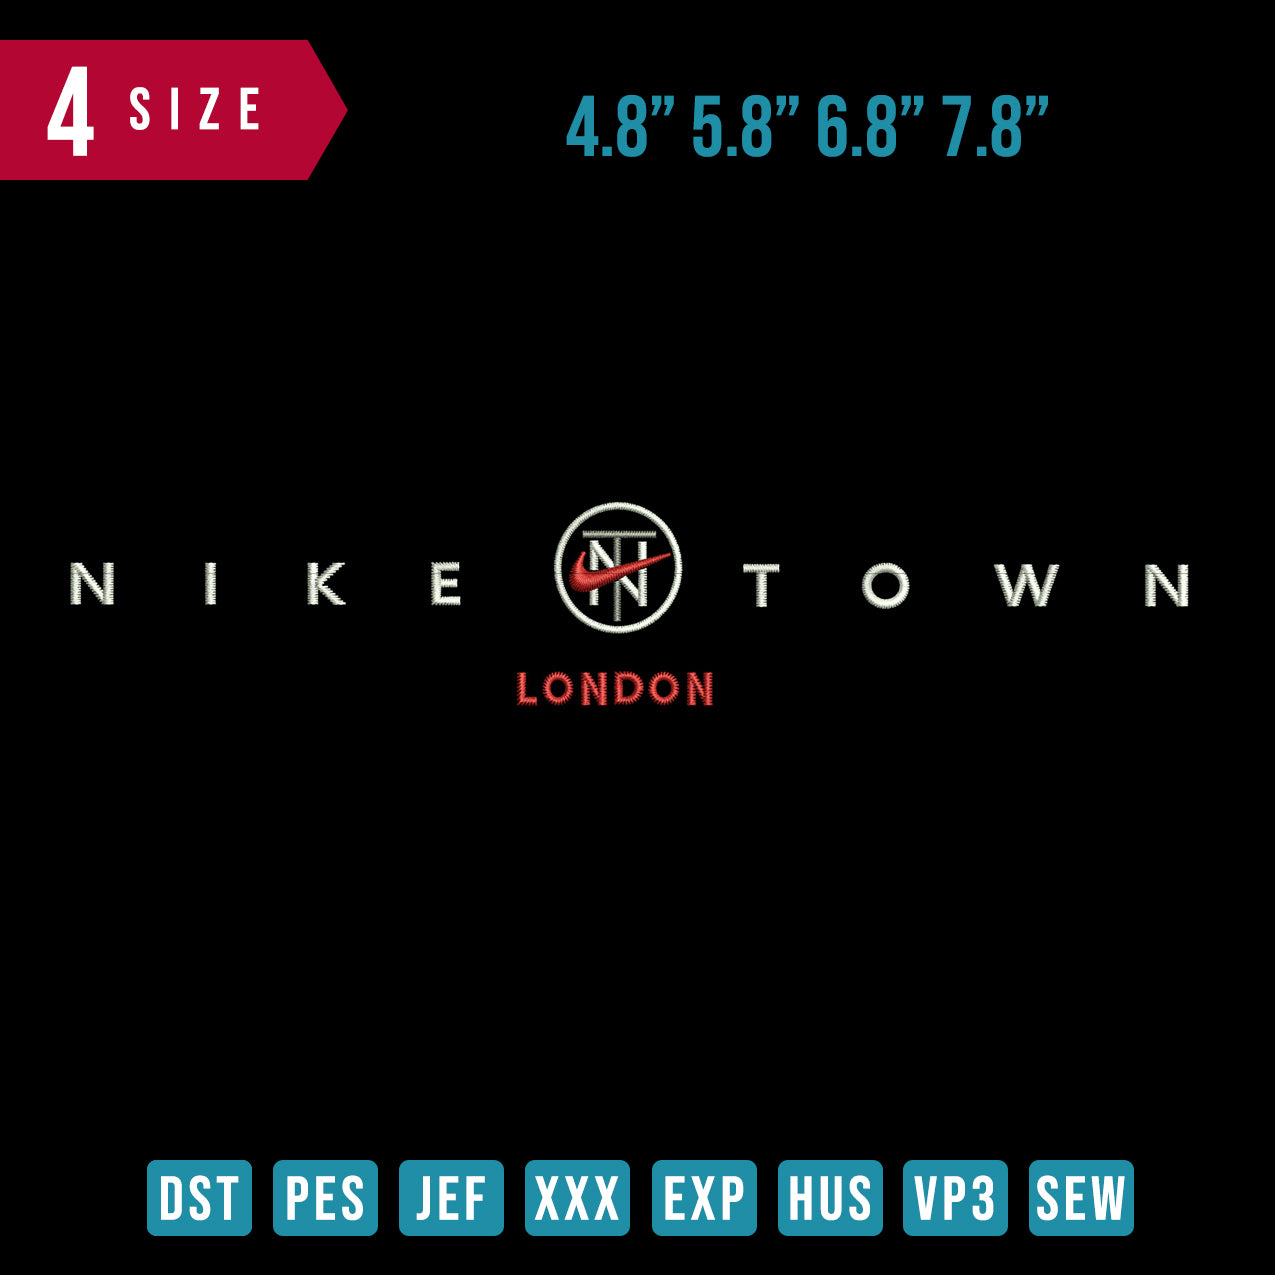 Nike town London